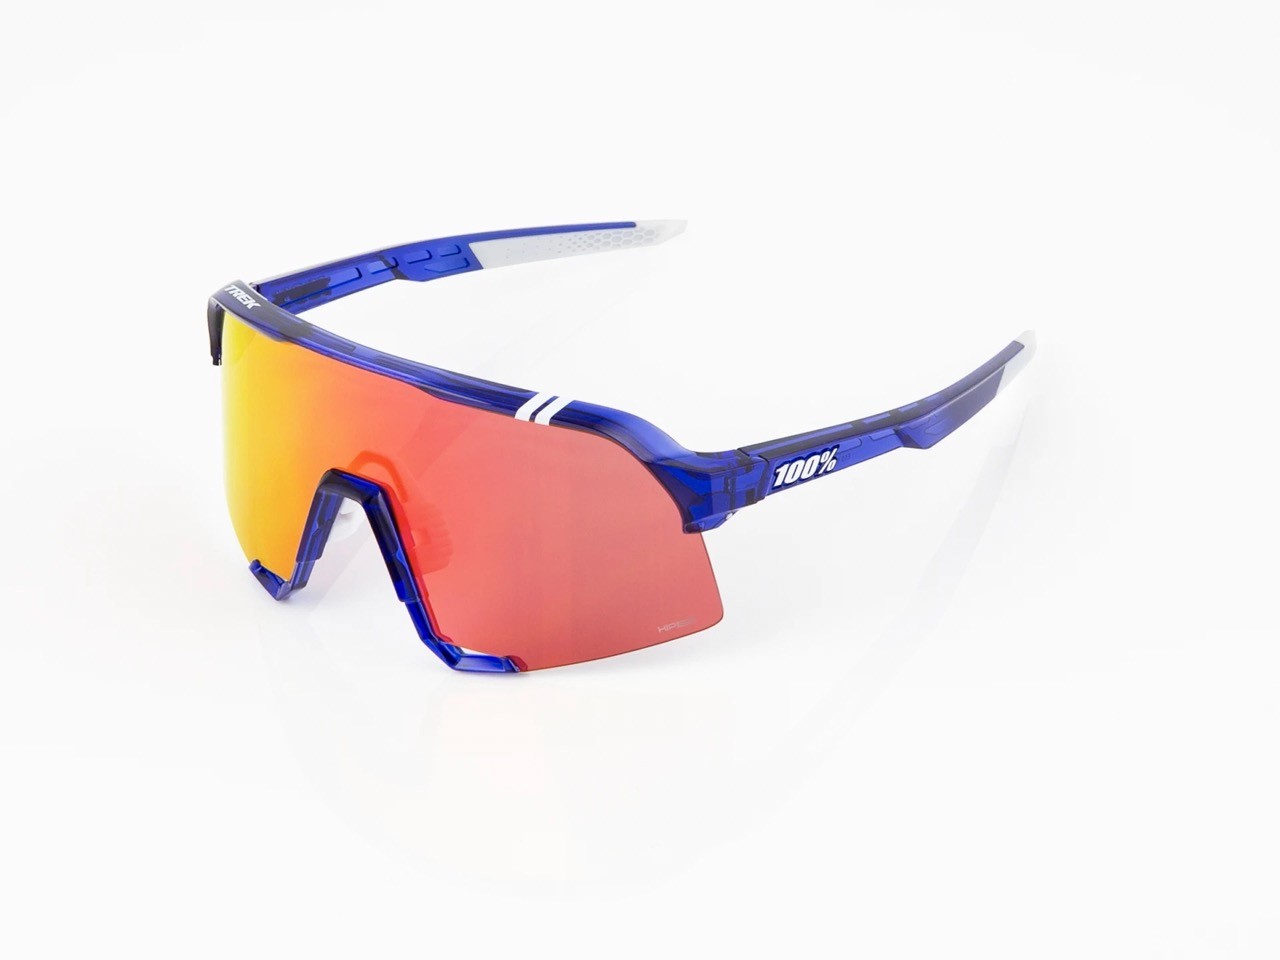 Sluneční brýle 100% S3 se skly HiPER, týmová edice Trek